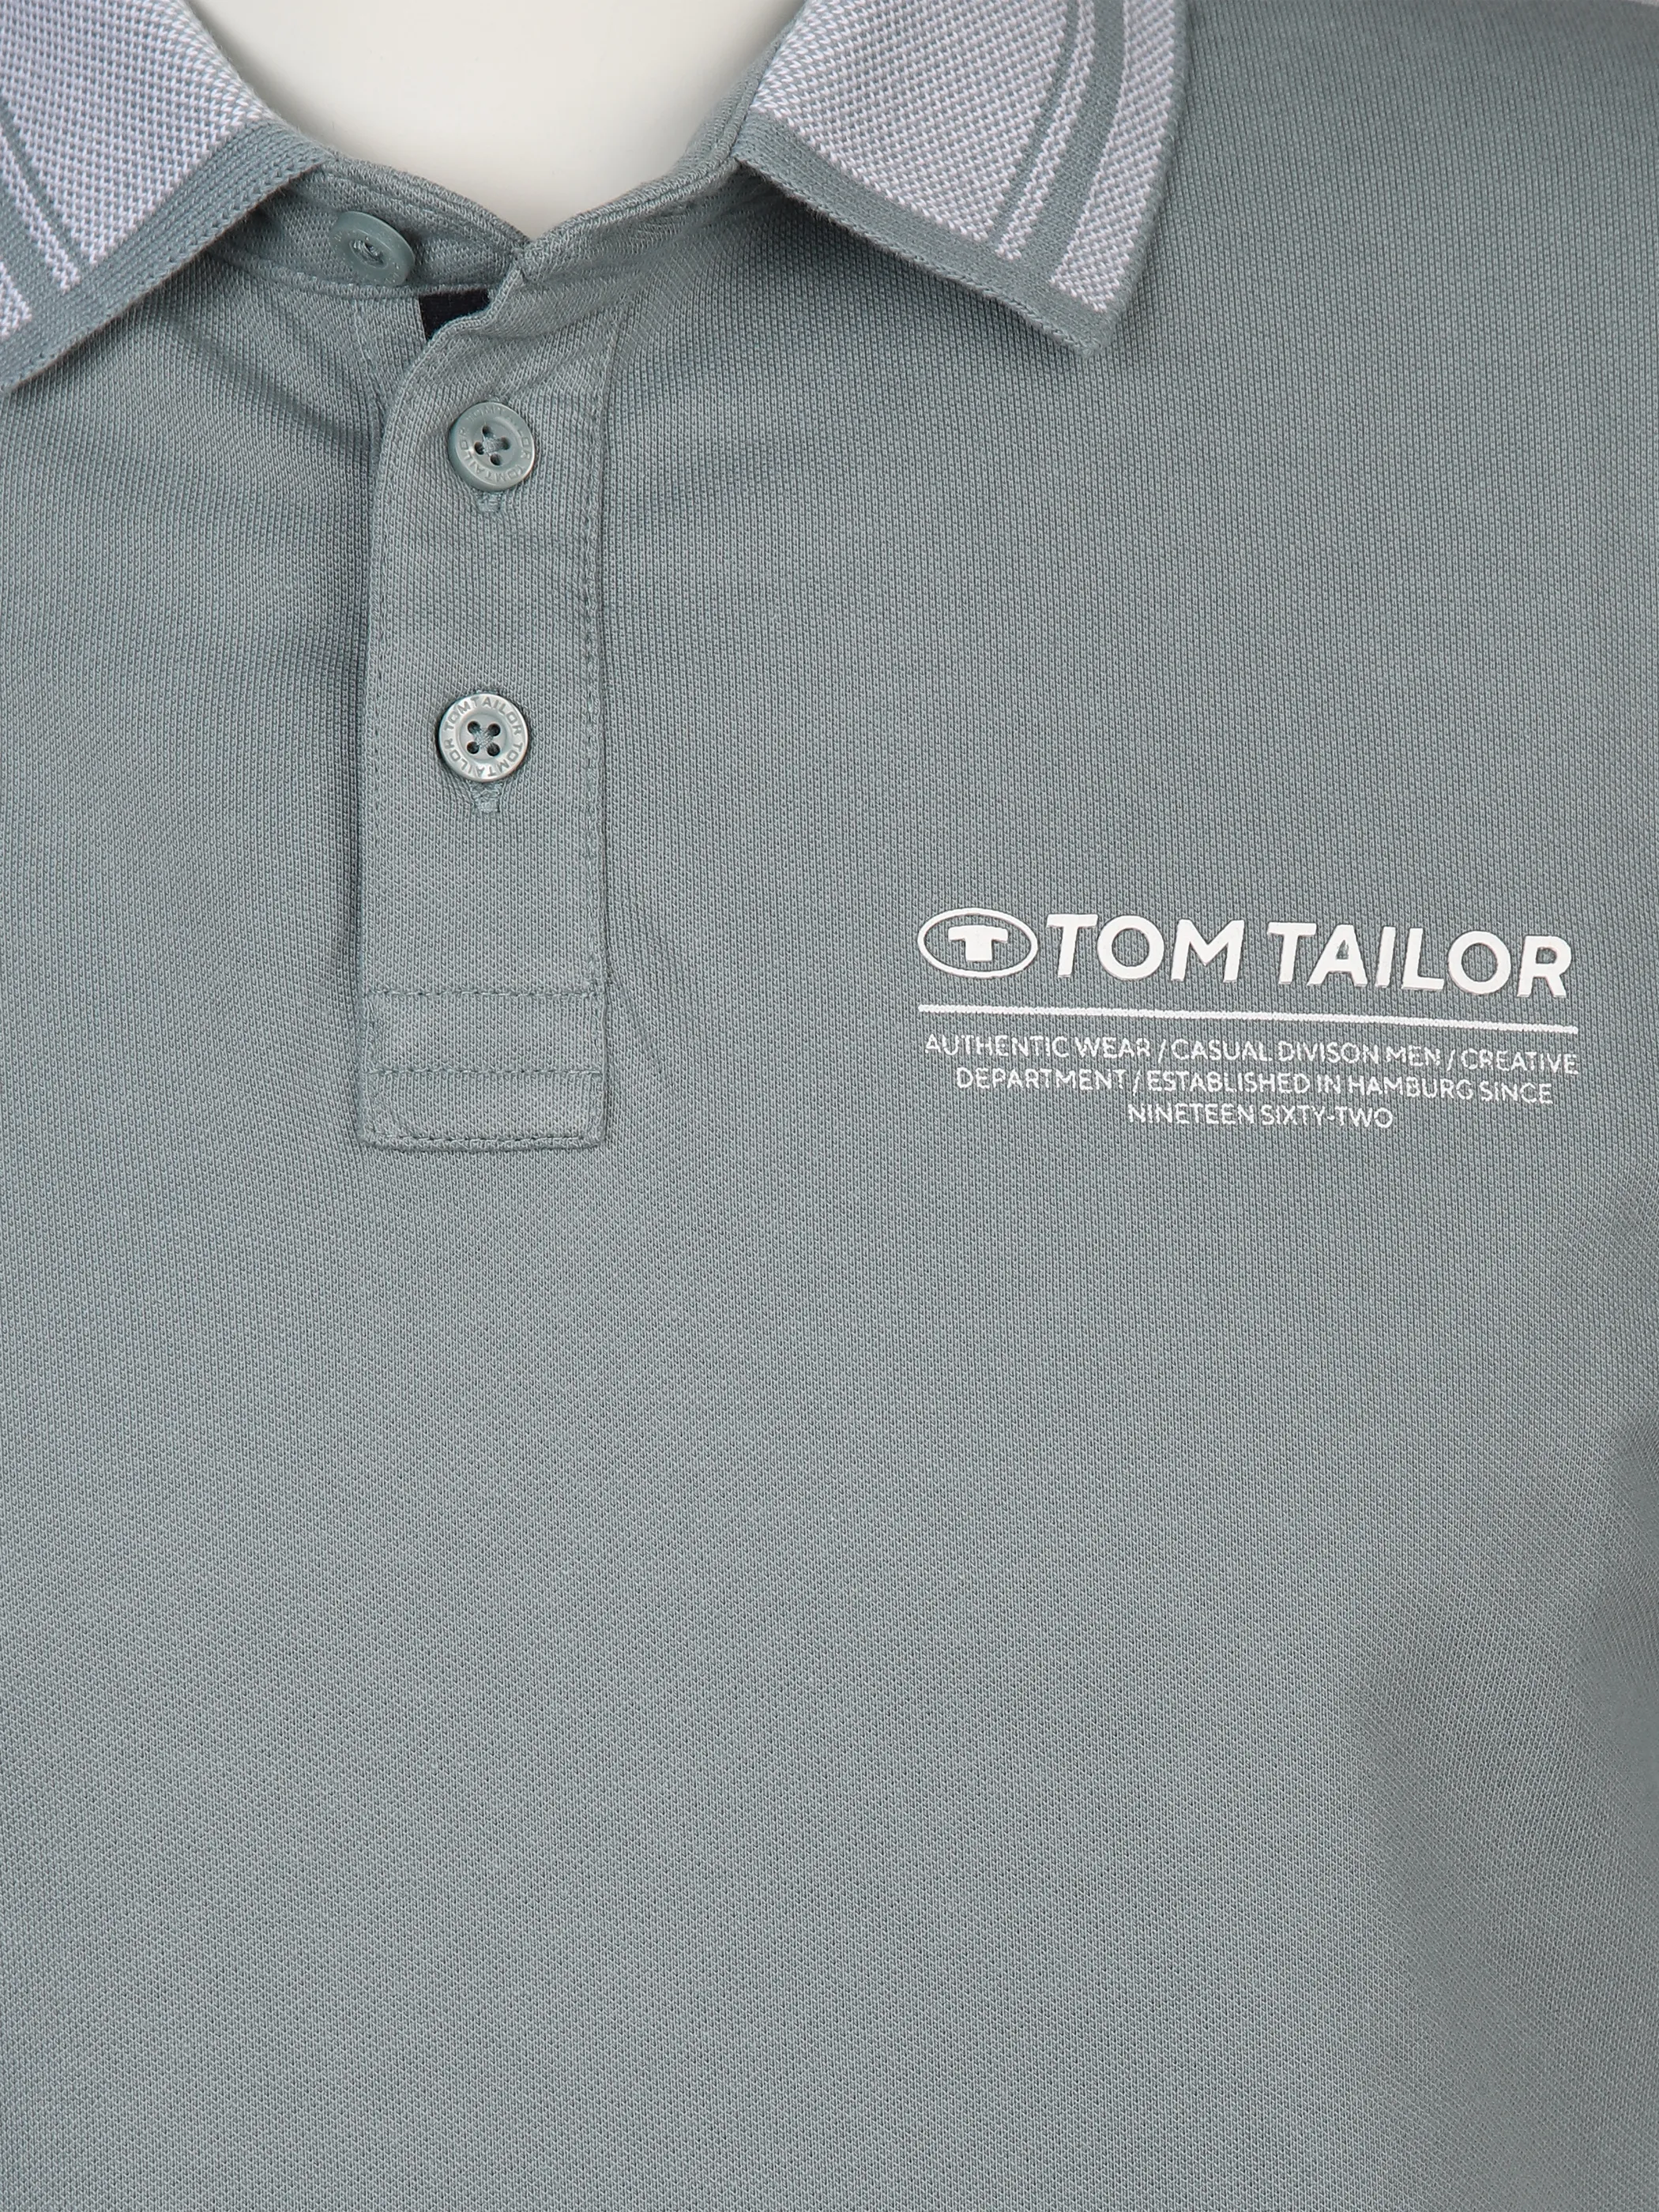 Tom Tailor 1040823 NOS polo with details Grau 890932 27475 3